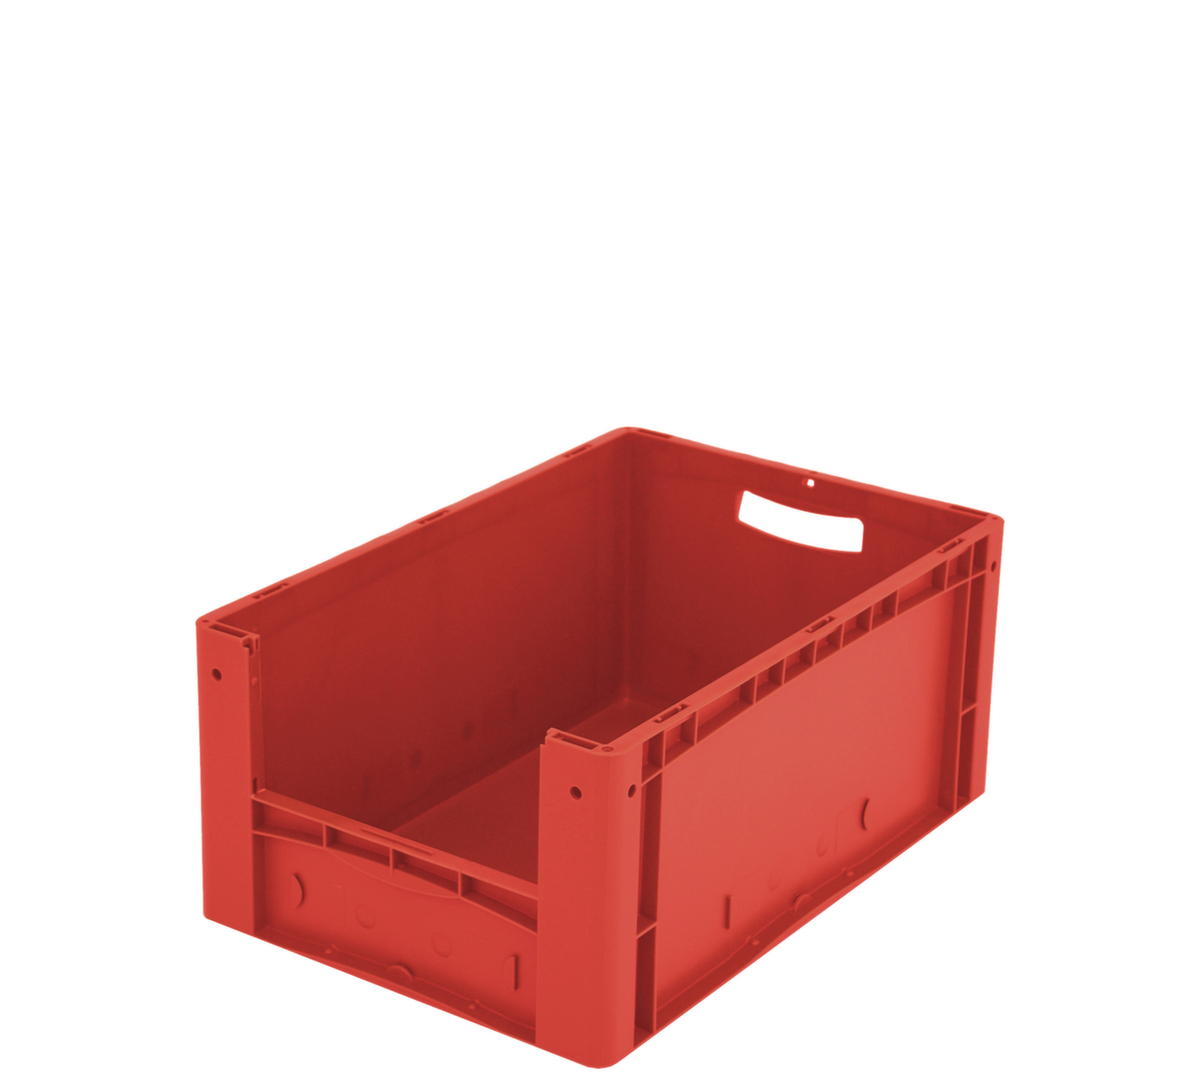 Euronorm zichtbare opslagcontainer met toegangsopening, rood, HxLxB 270x600x400 mm